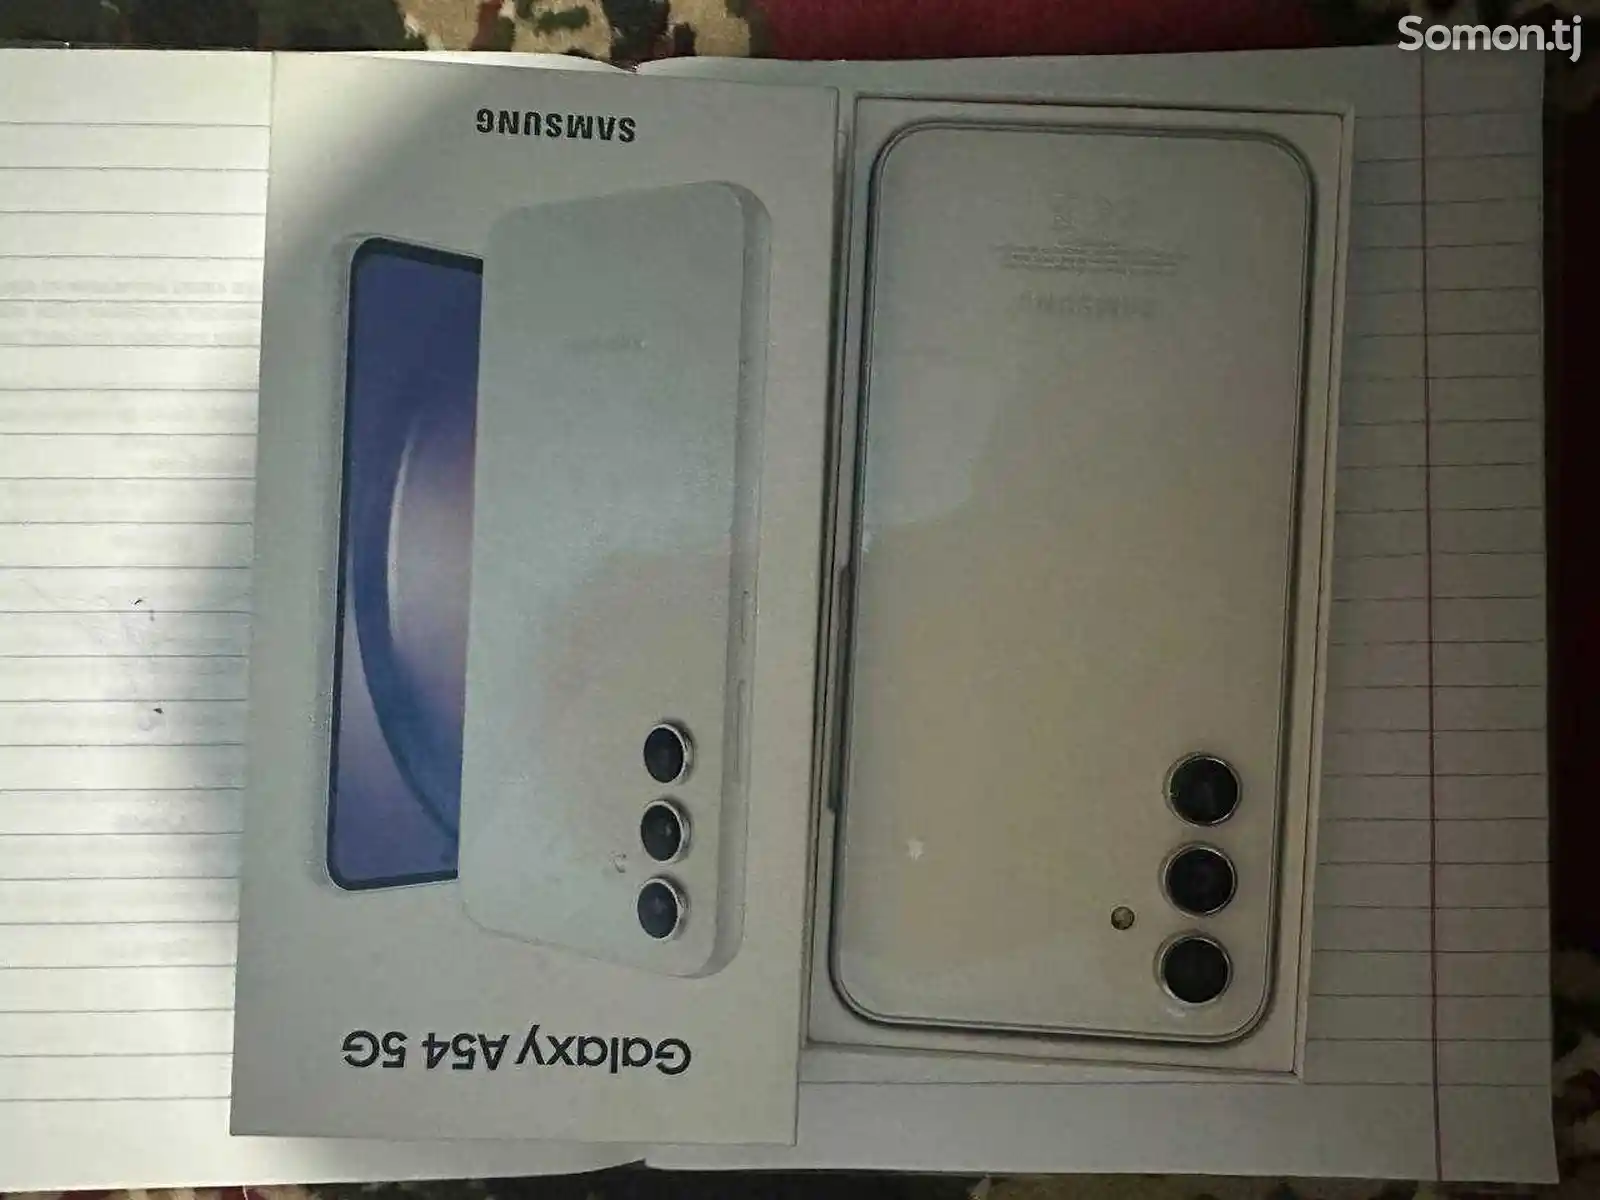 Samsung Galaxy A54-2